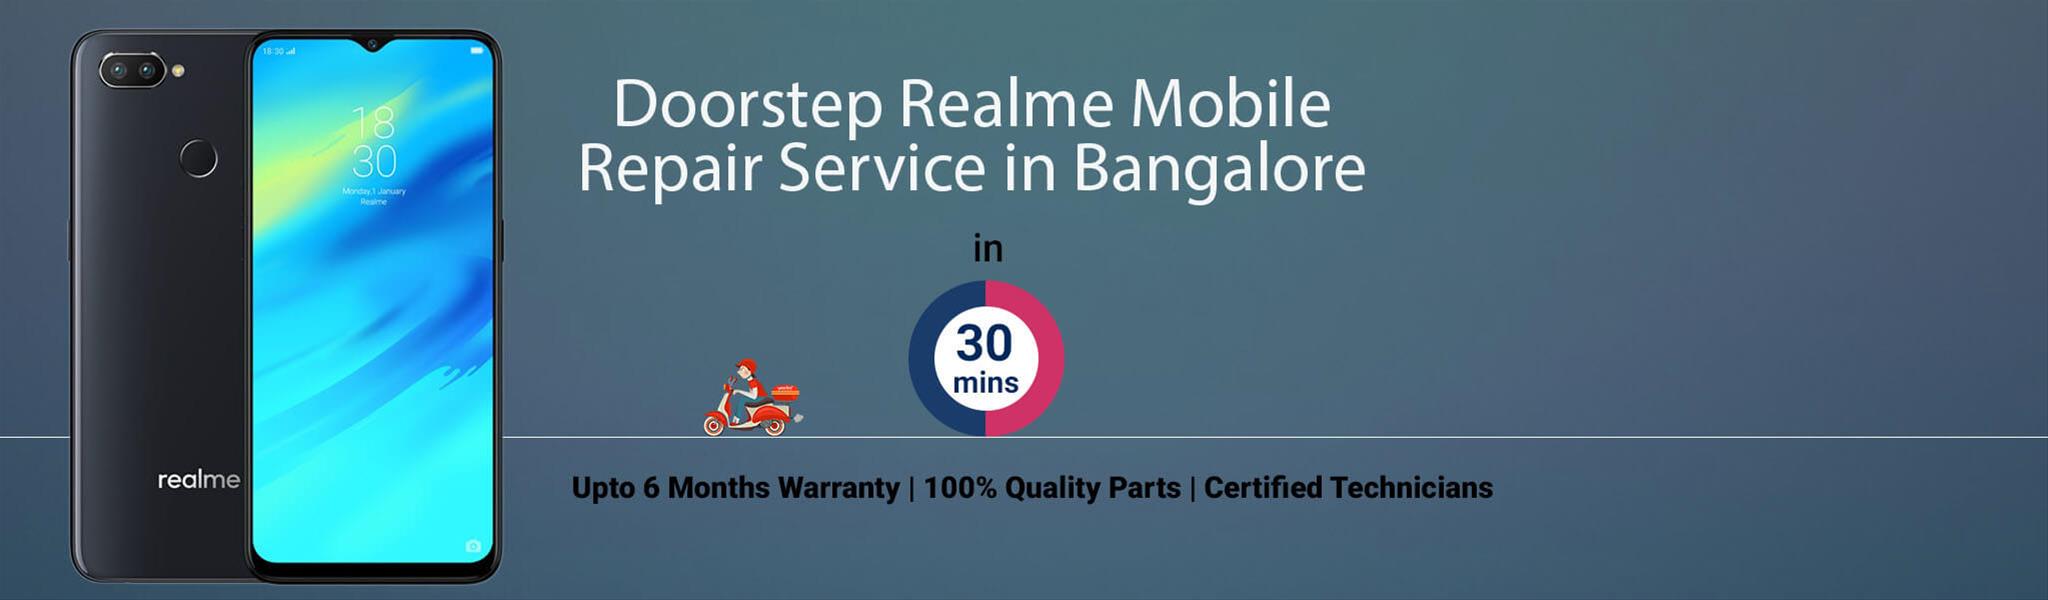 realme-repair-service-banner-bangalore.jpg